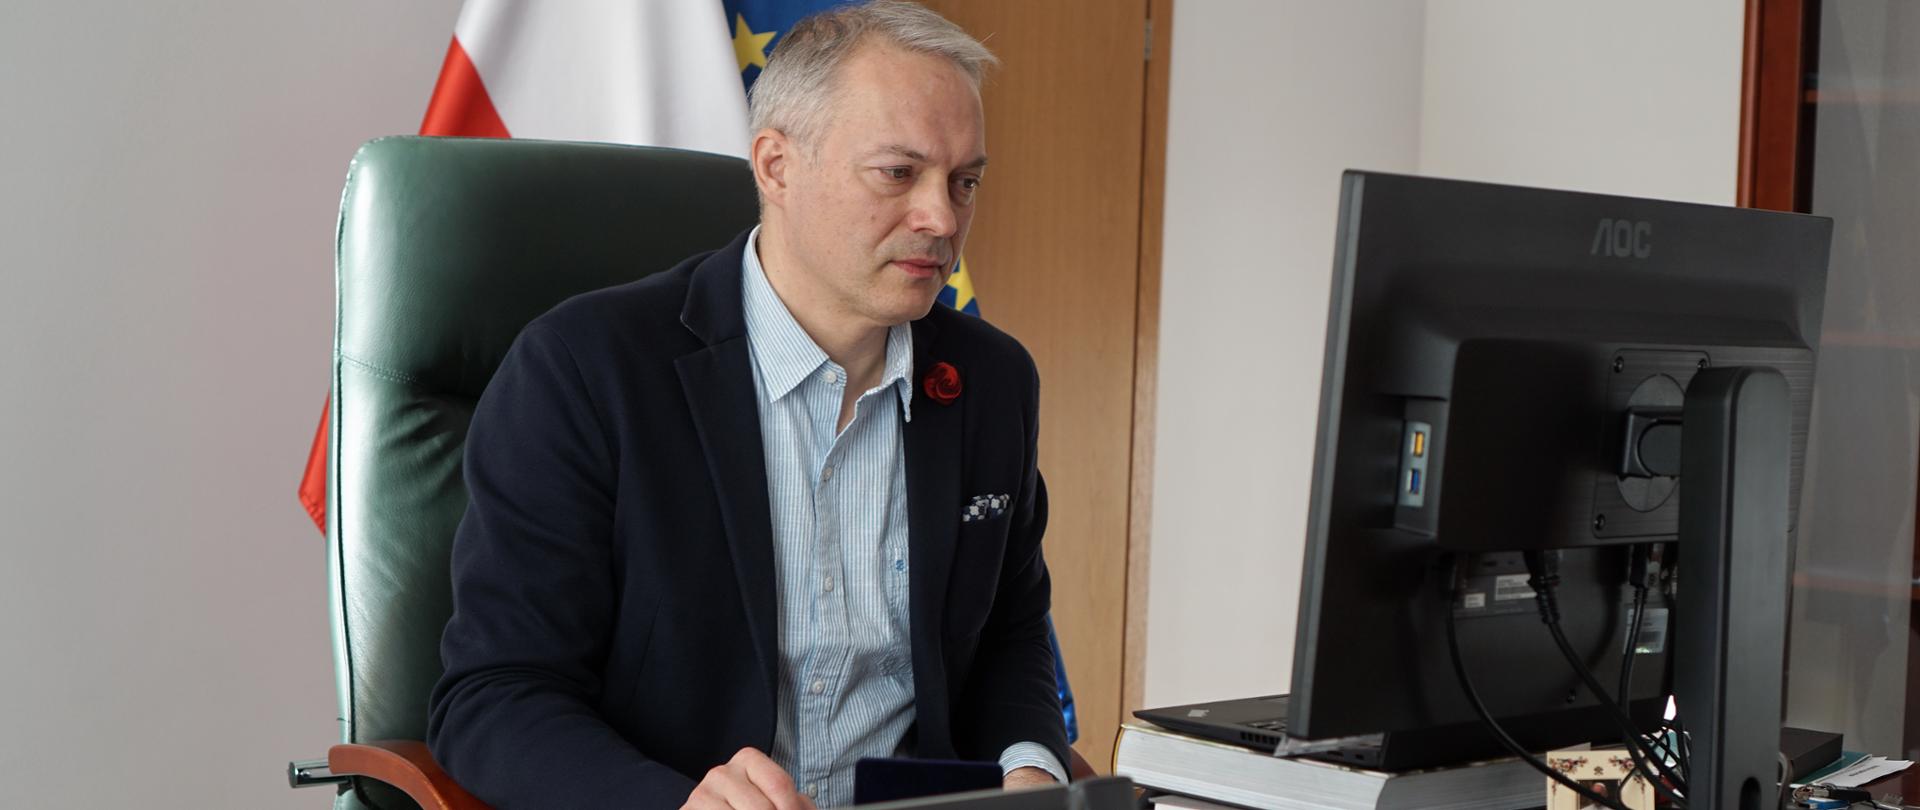 W gabinecie przy biurku z monitorem siedzi wiceminister Jacek Żalek